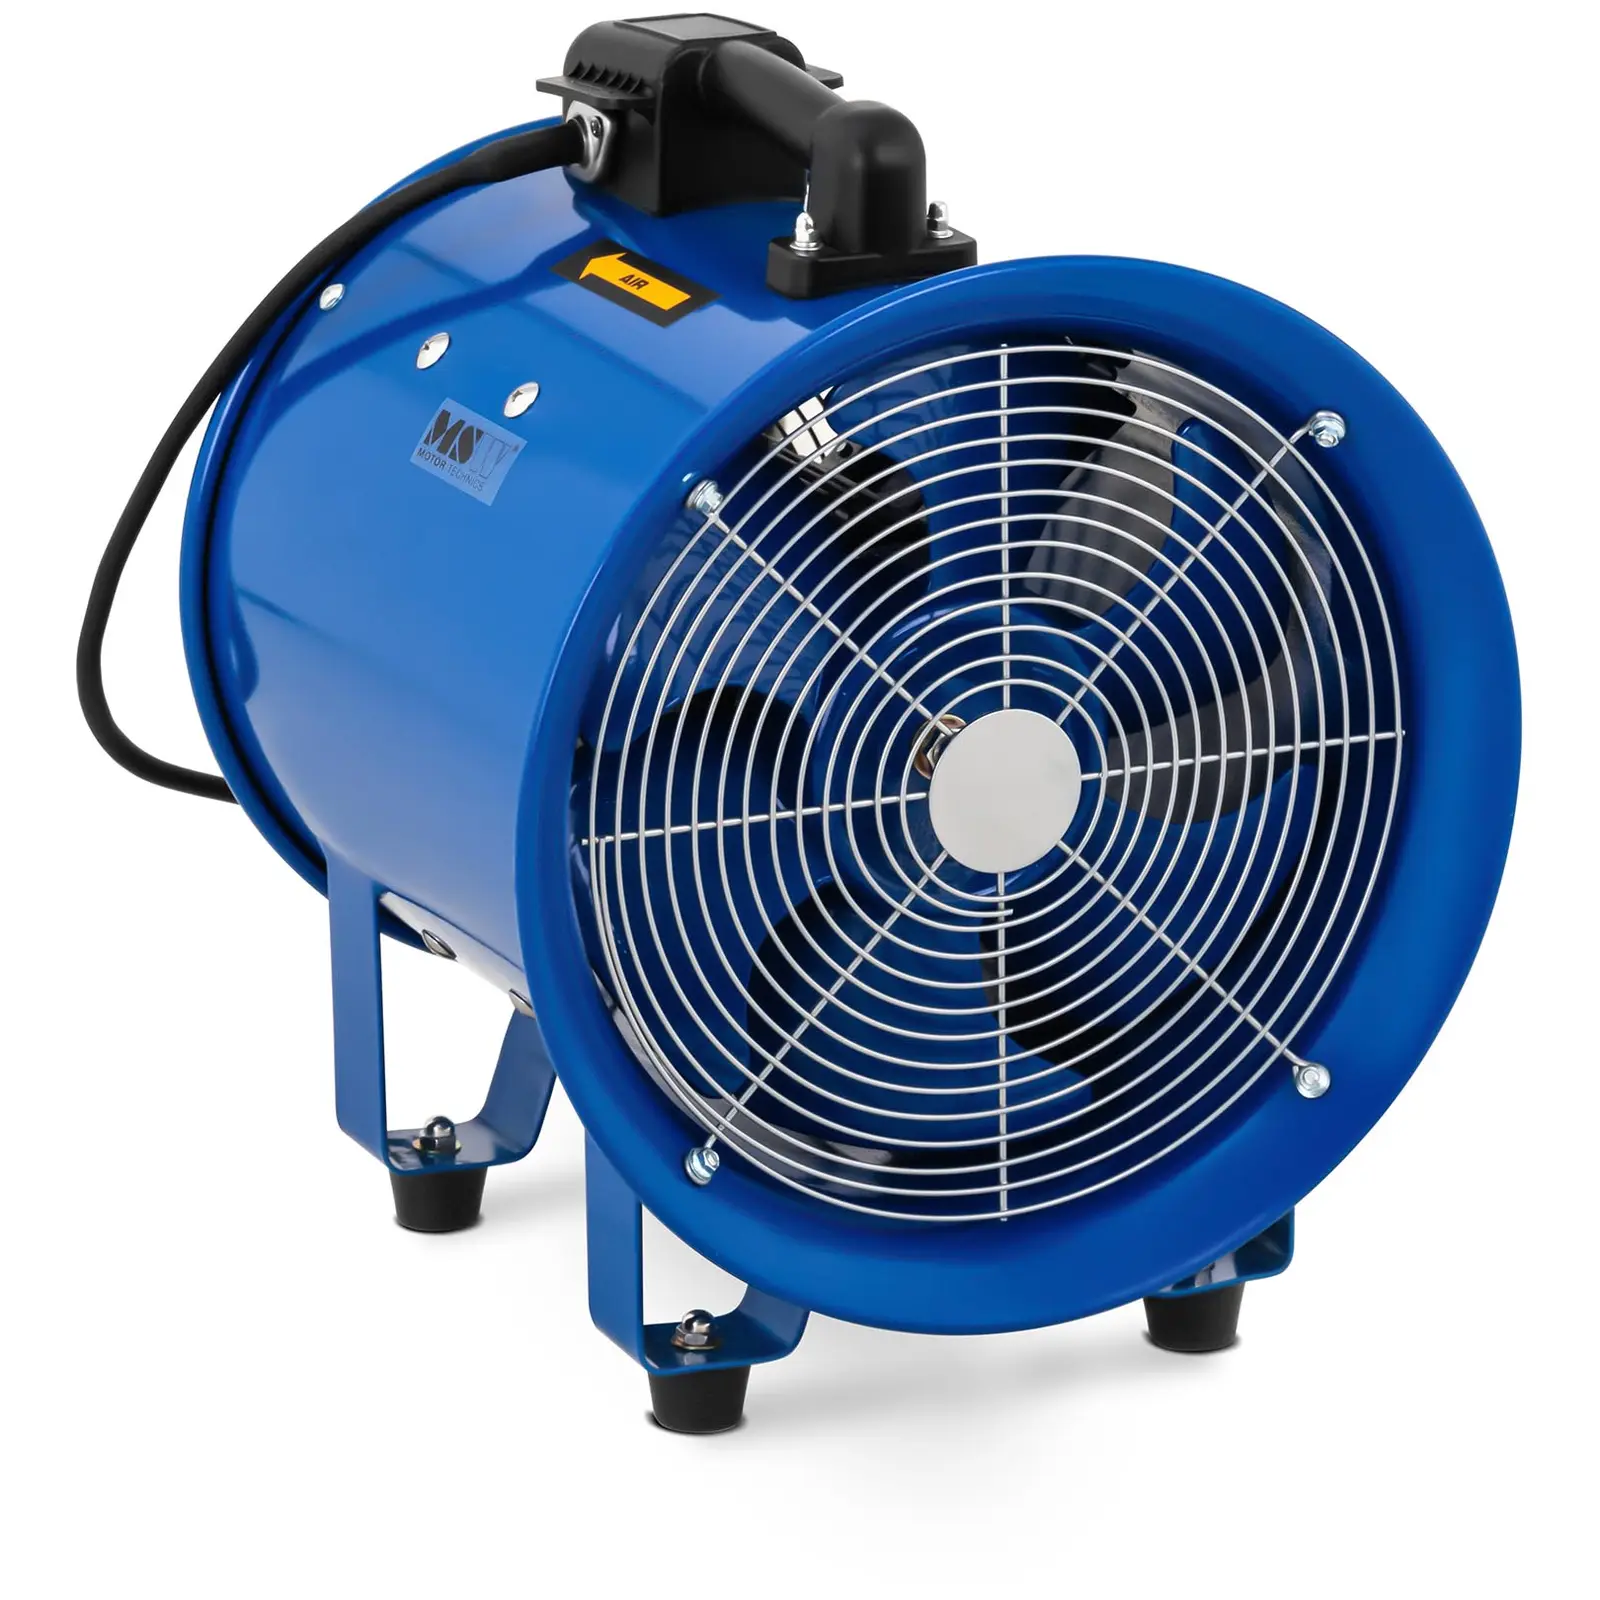 Axiális ventilátor - 3900 m³ / h - Ø 300 mm